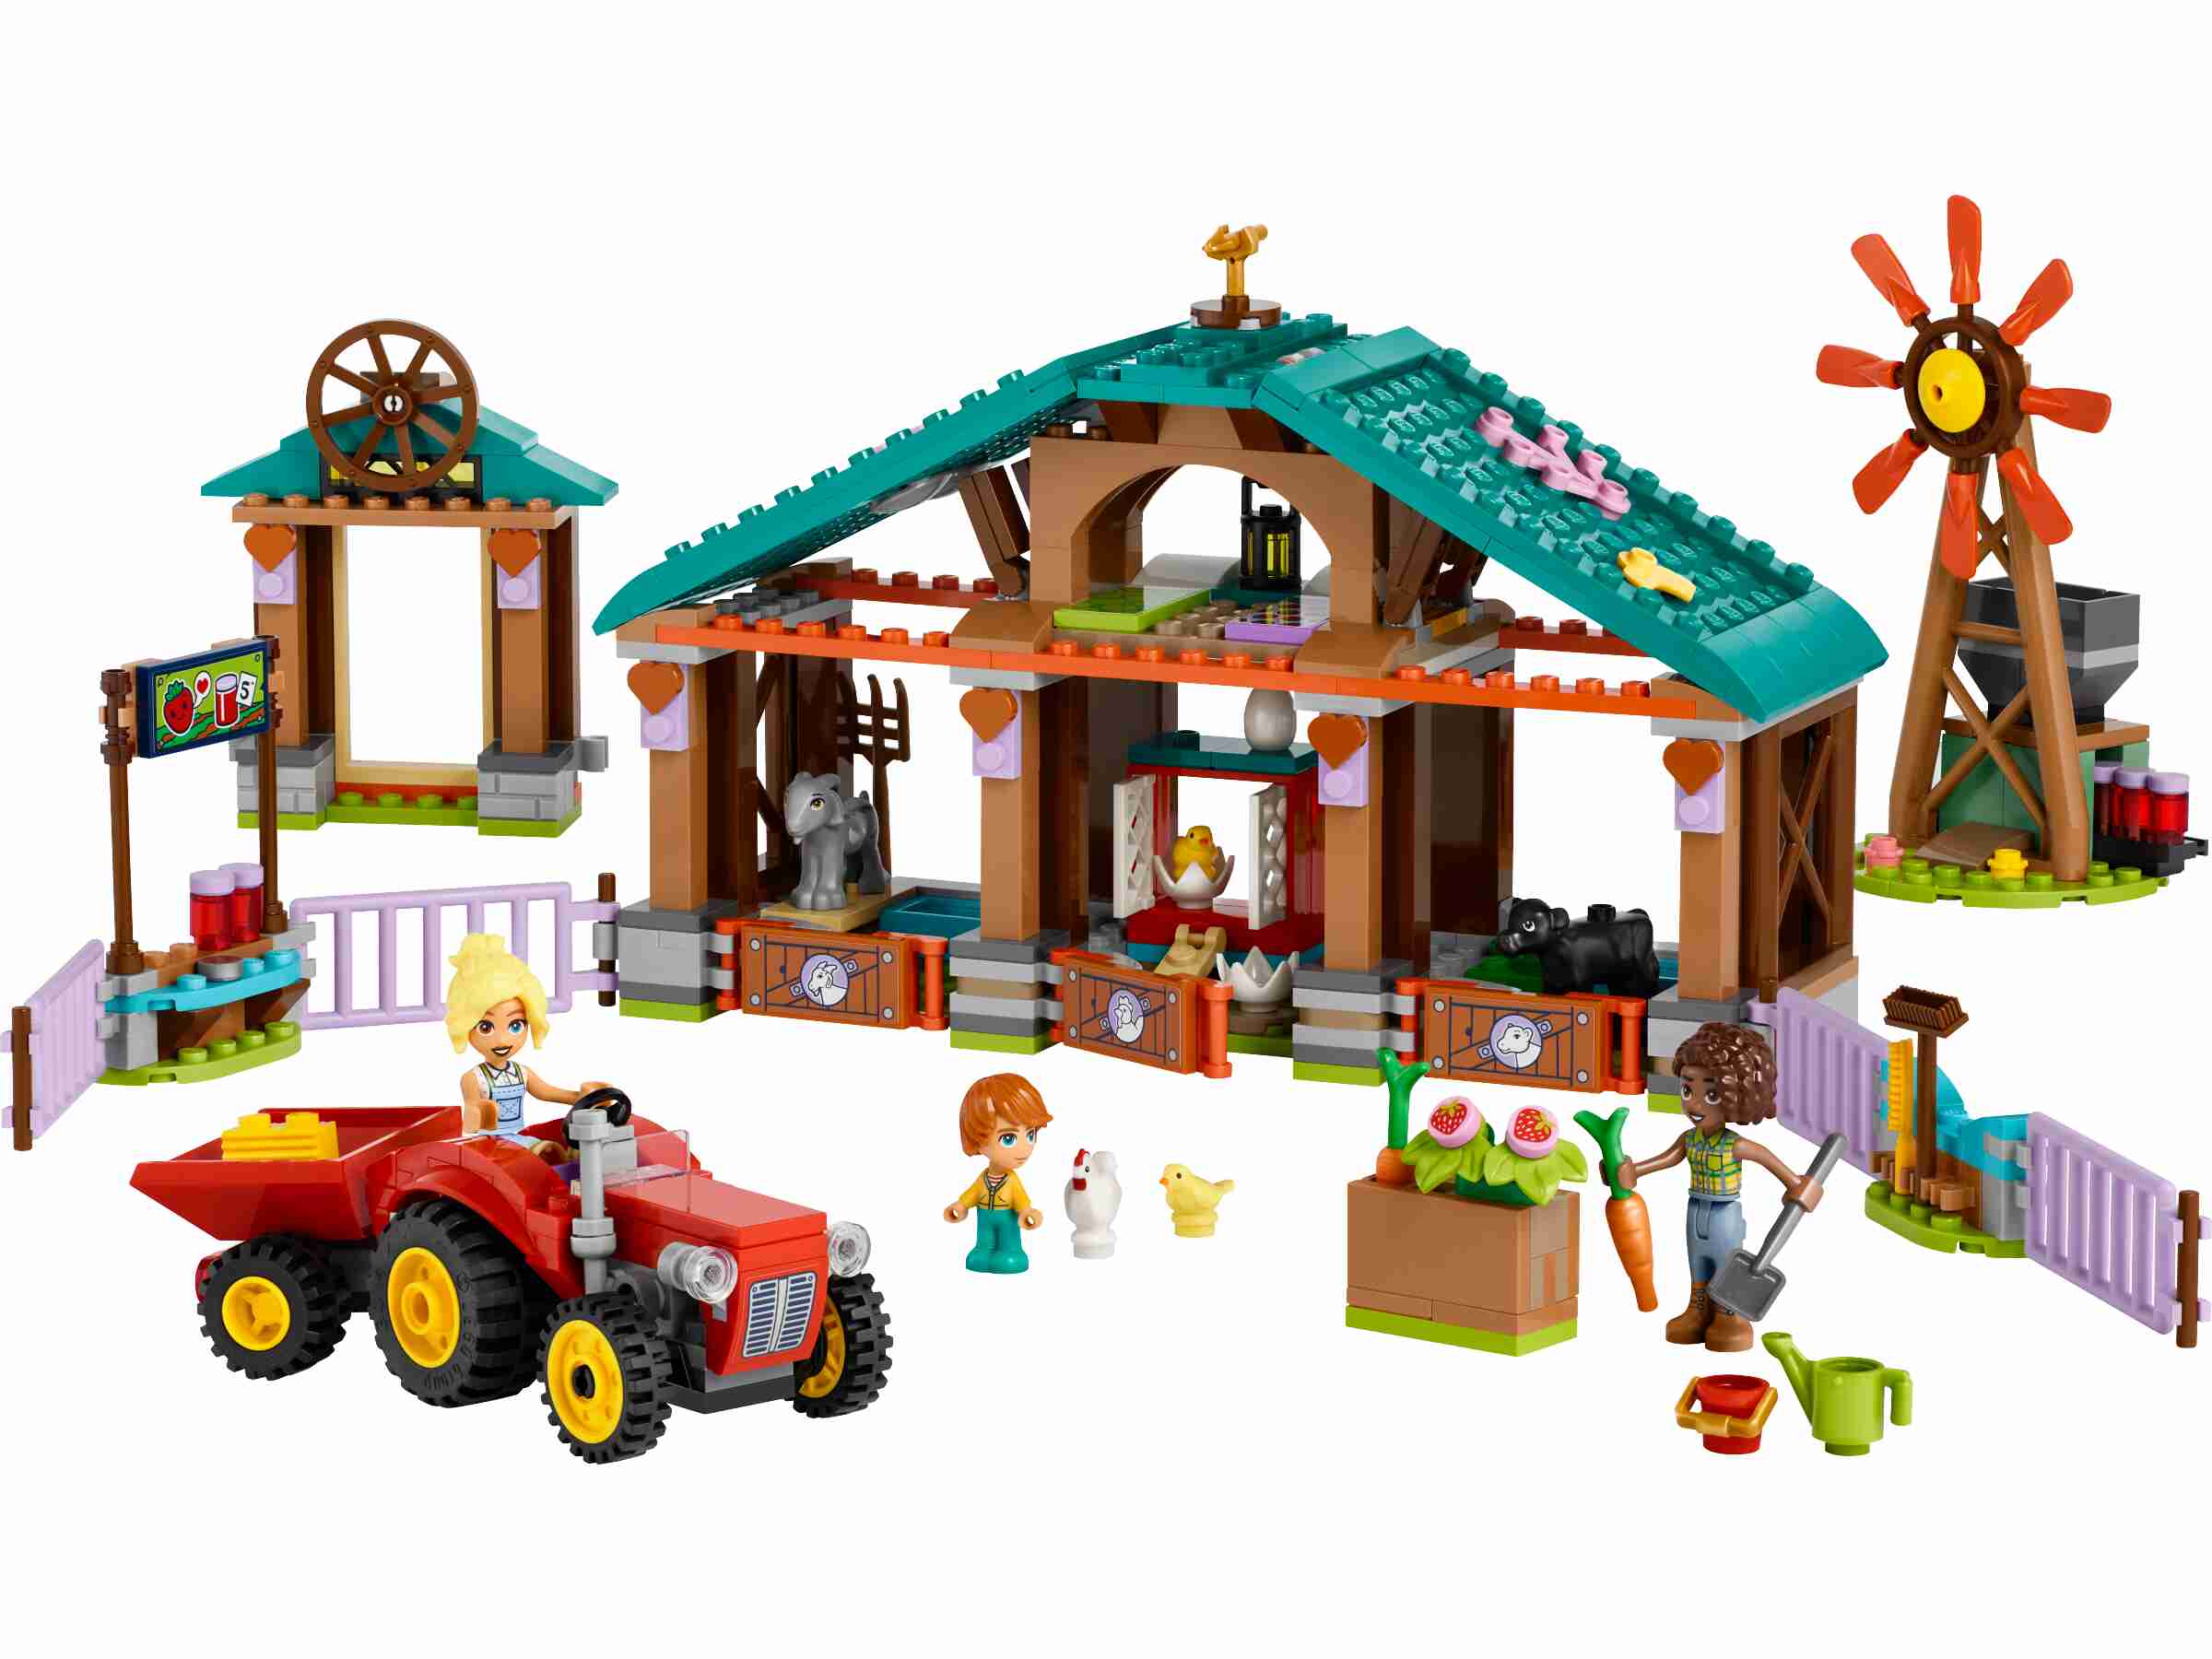 LEGO 42617 Friends Auffangstation für Farmtiere, 3 Spielfiguren und 5 Tiere